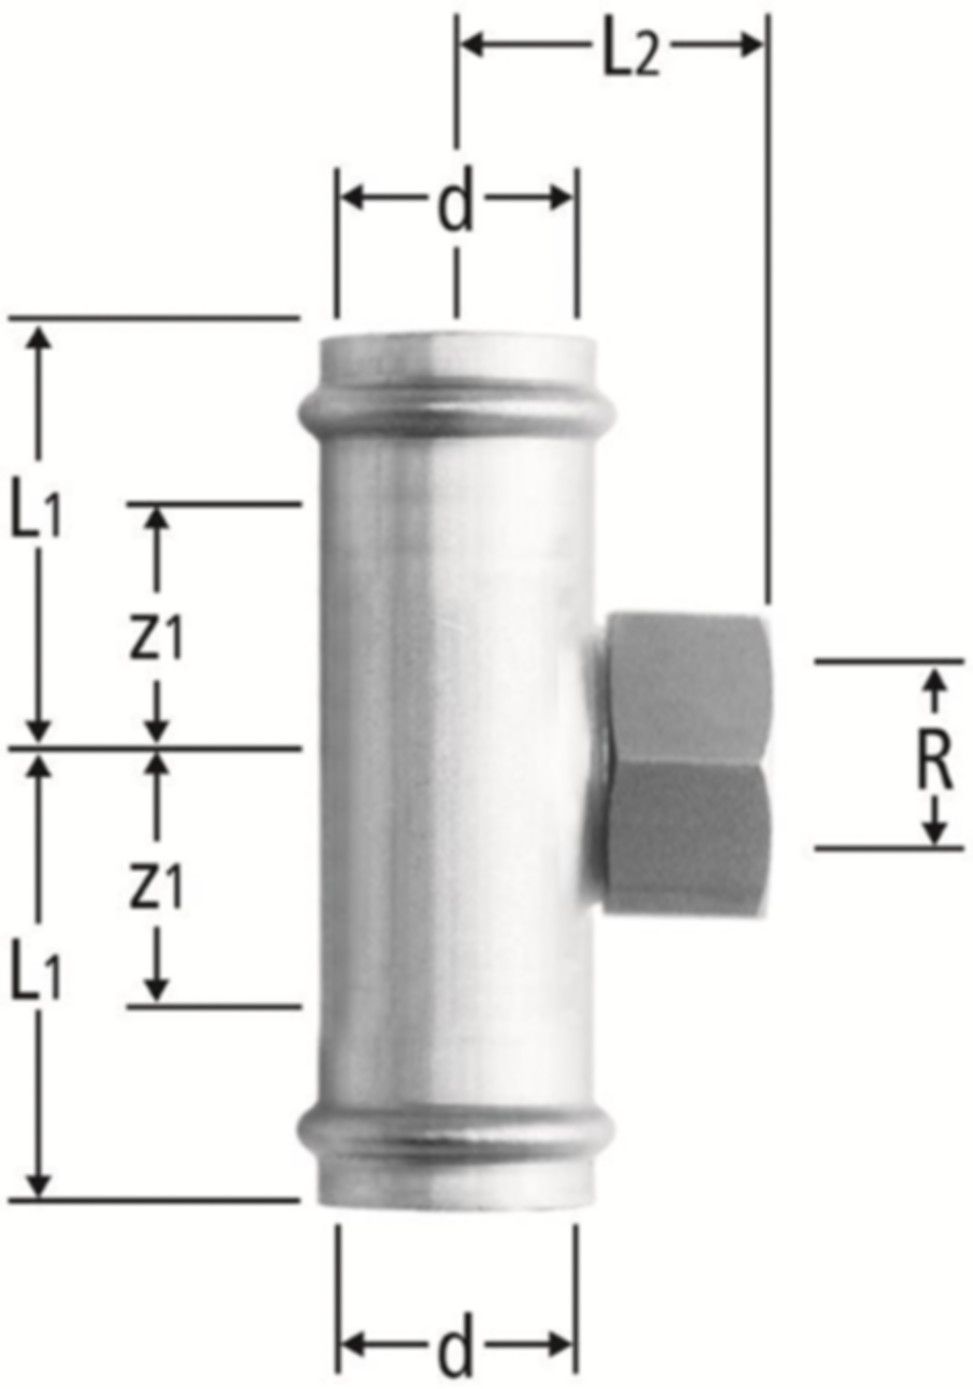 T-Stück m/IG 22 x 3/4" x 22 mm 80019.24 mit Schiebemuffe - Nussbaum-Optipress-Inox-Fittings